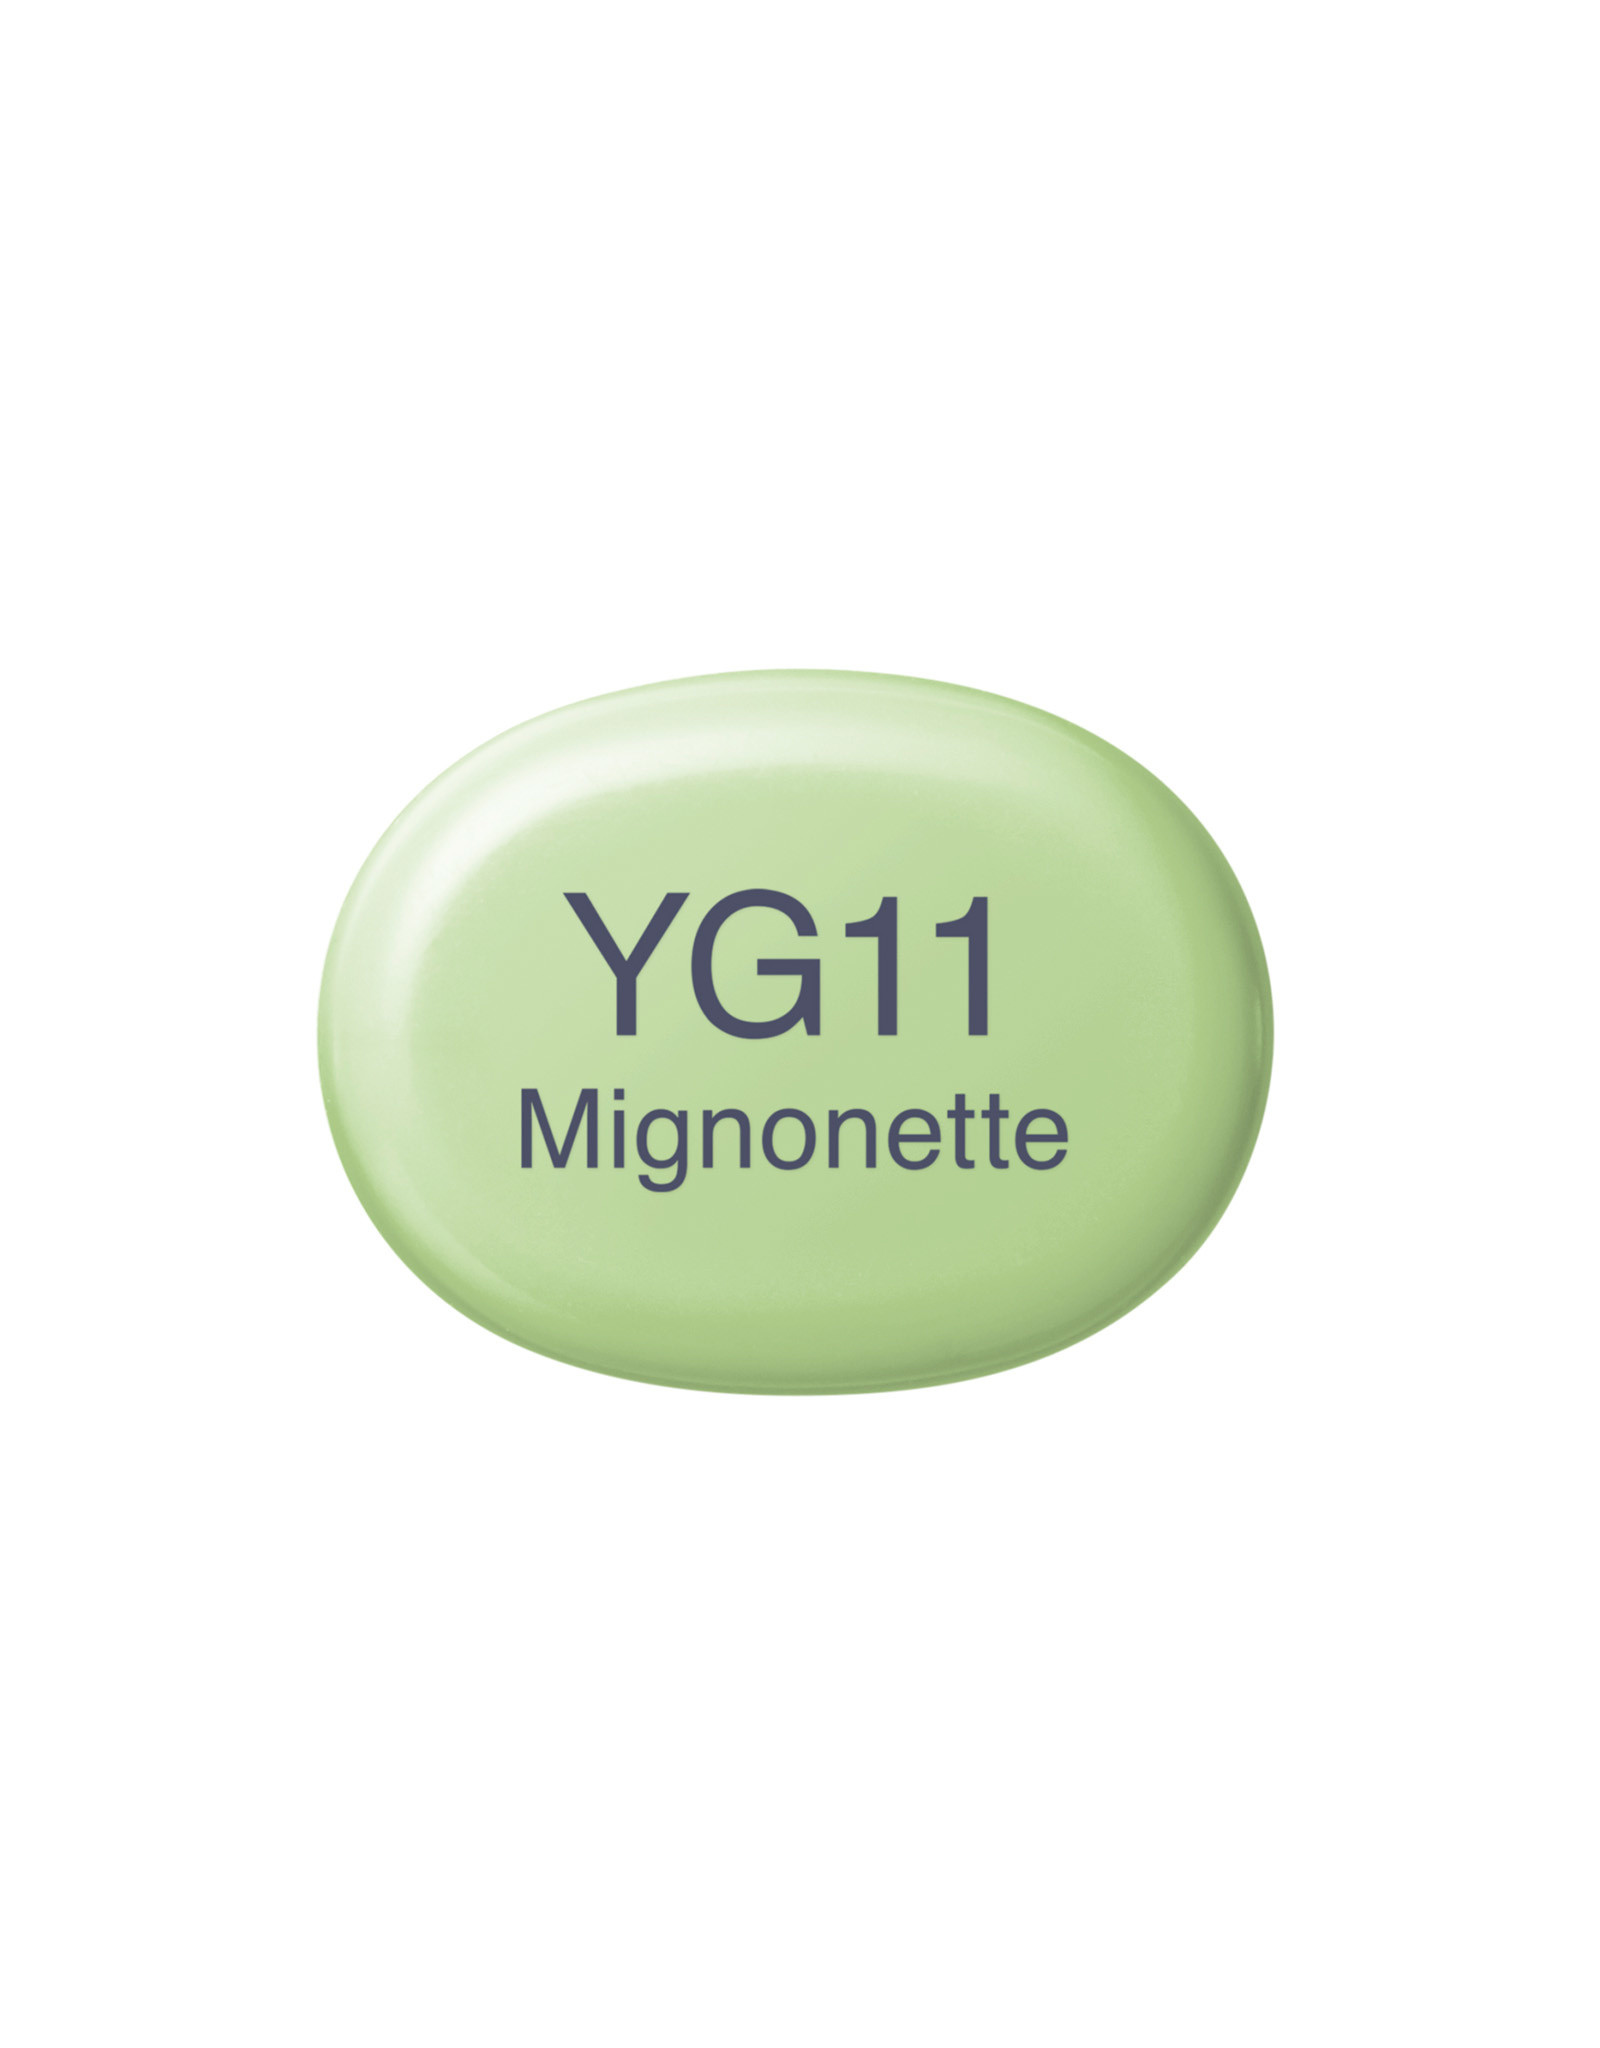 COPIC COPIC Sketch Marker YG11 Mignonette